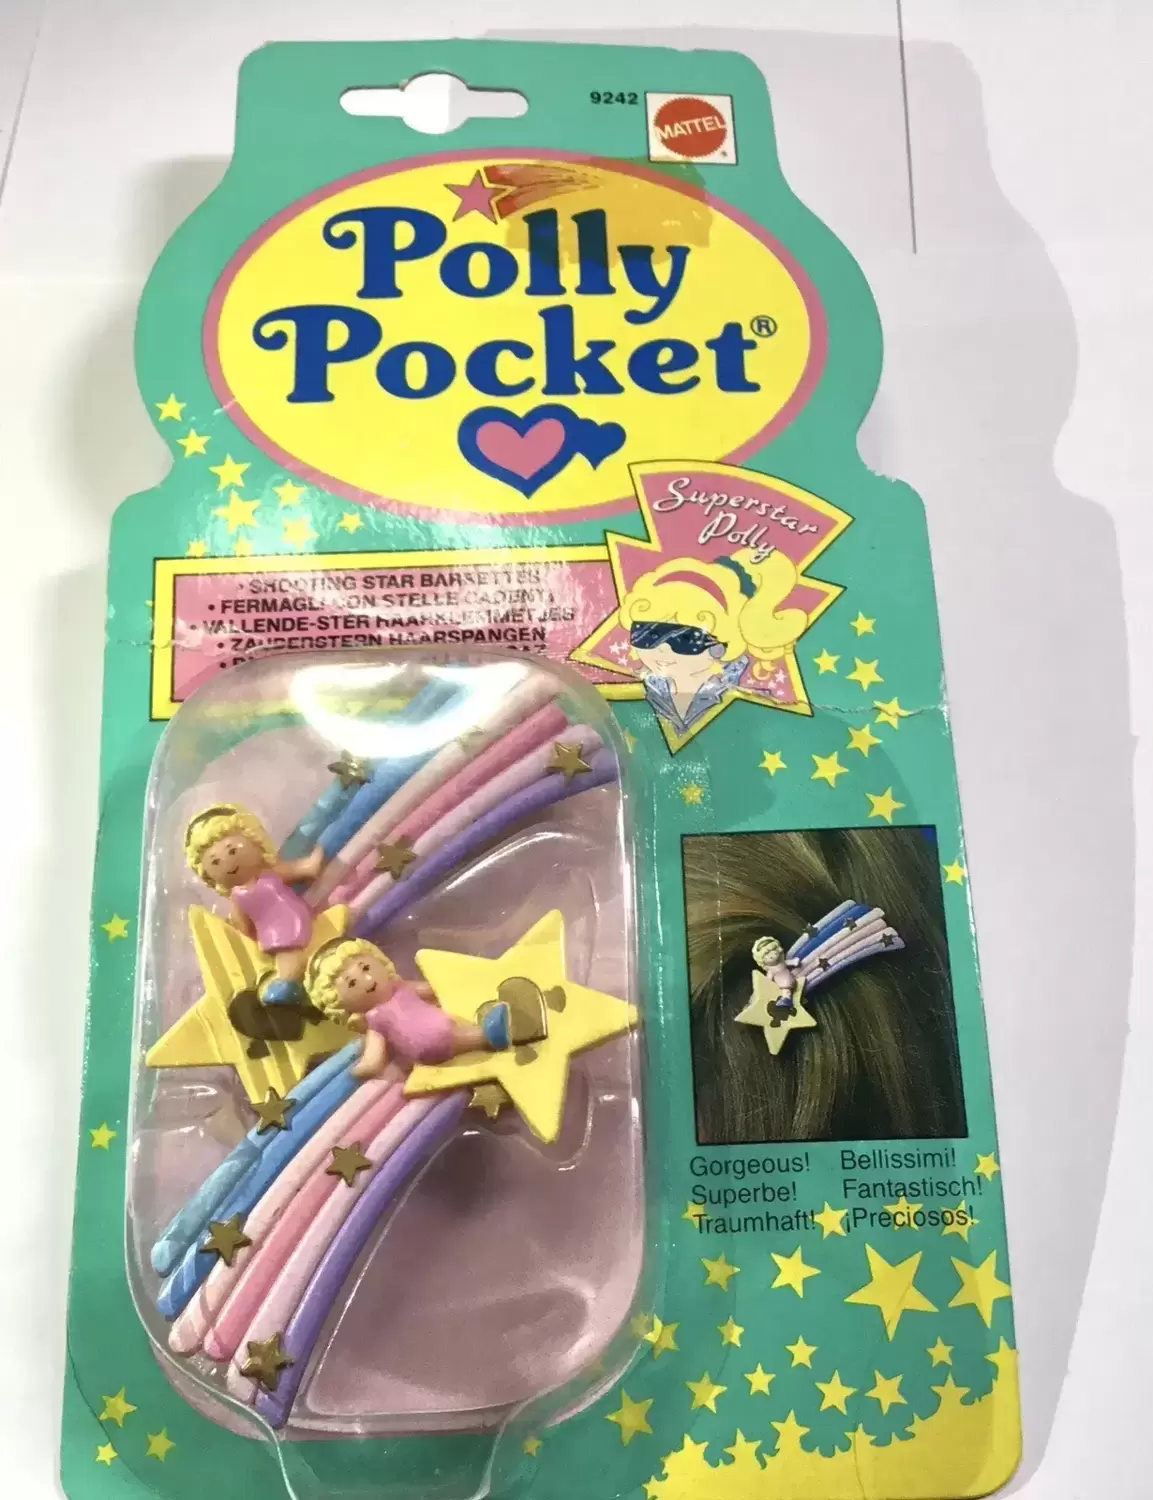 Polly Pocket Bluebird (vintage) - Shooting Star Barrettes - SuperStar Polly